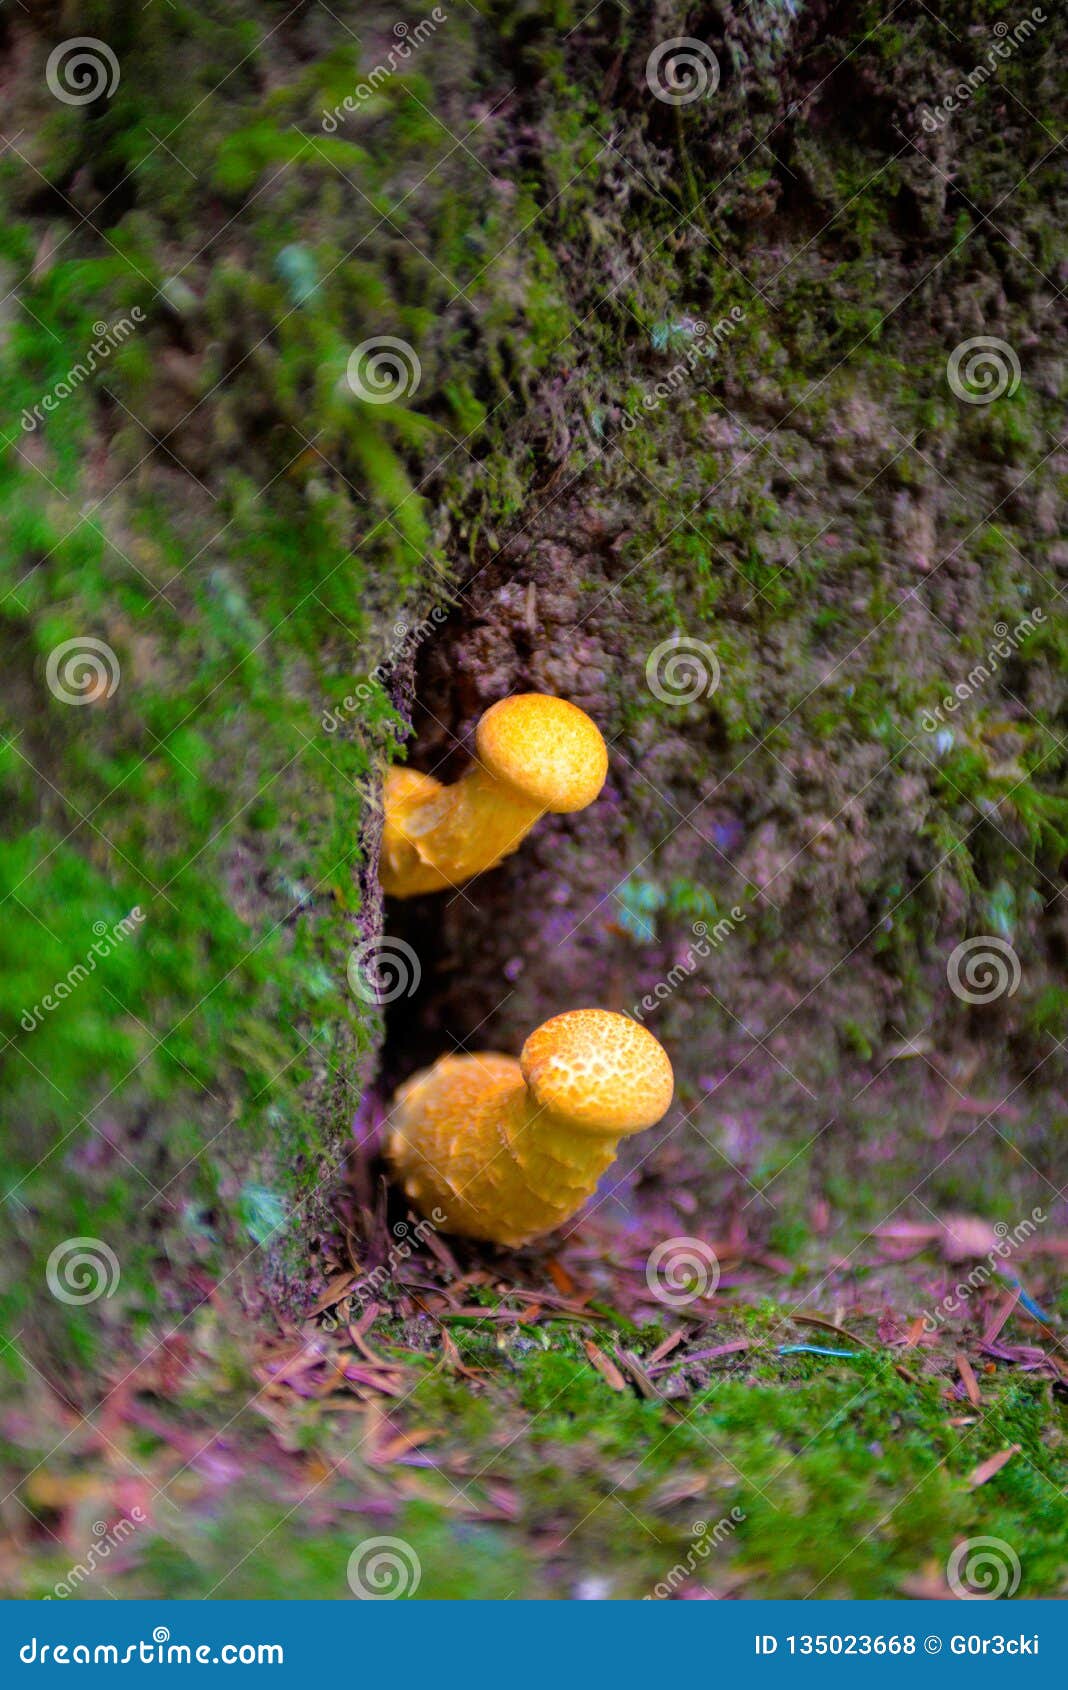 yellow mushrooms, hallucinogen, blur effect, seasonal ingredients, forest ground, poison